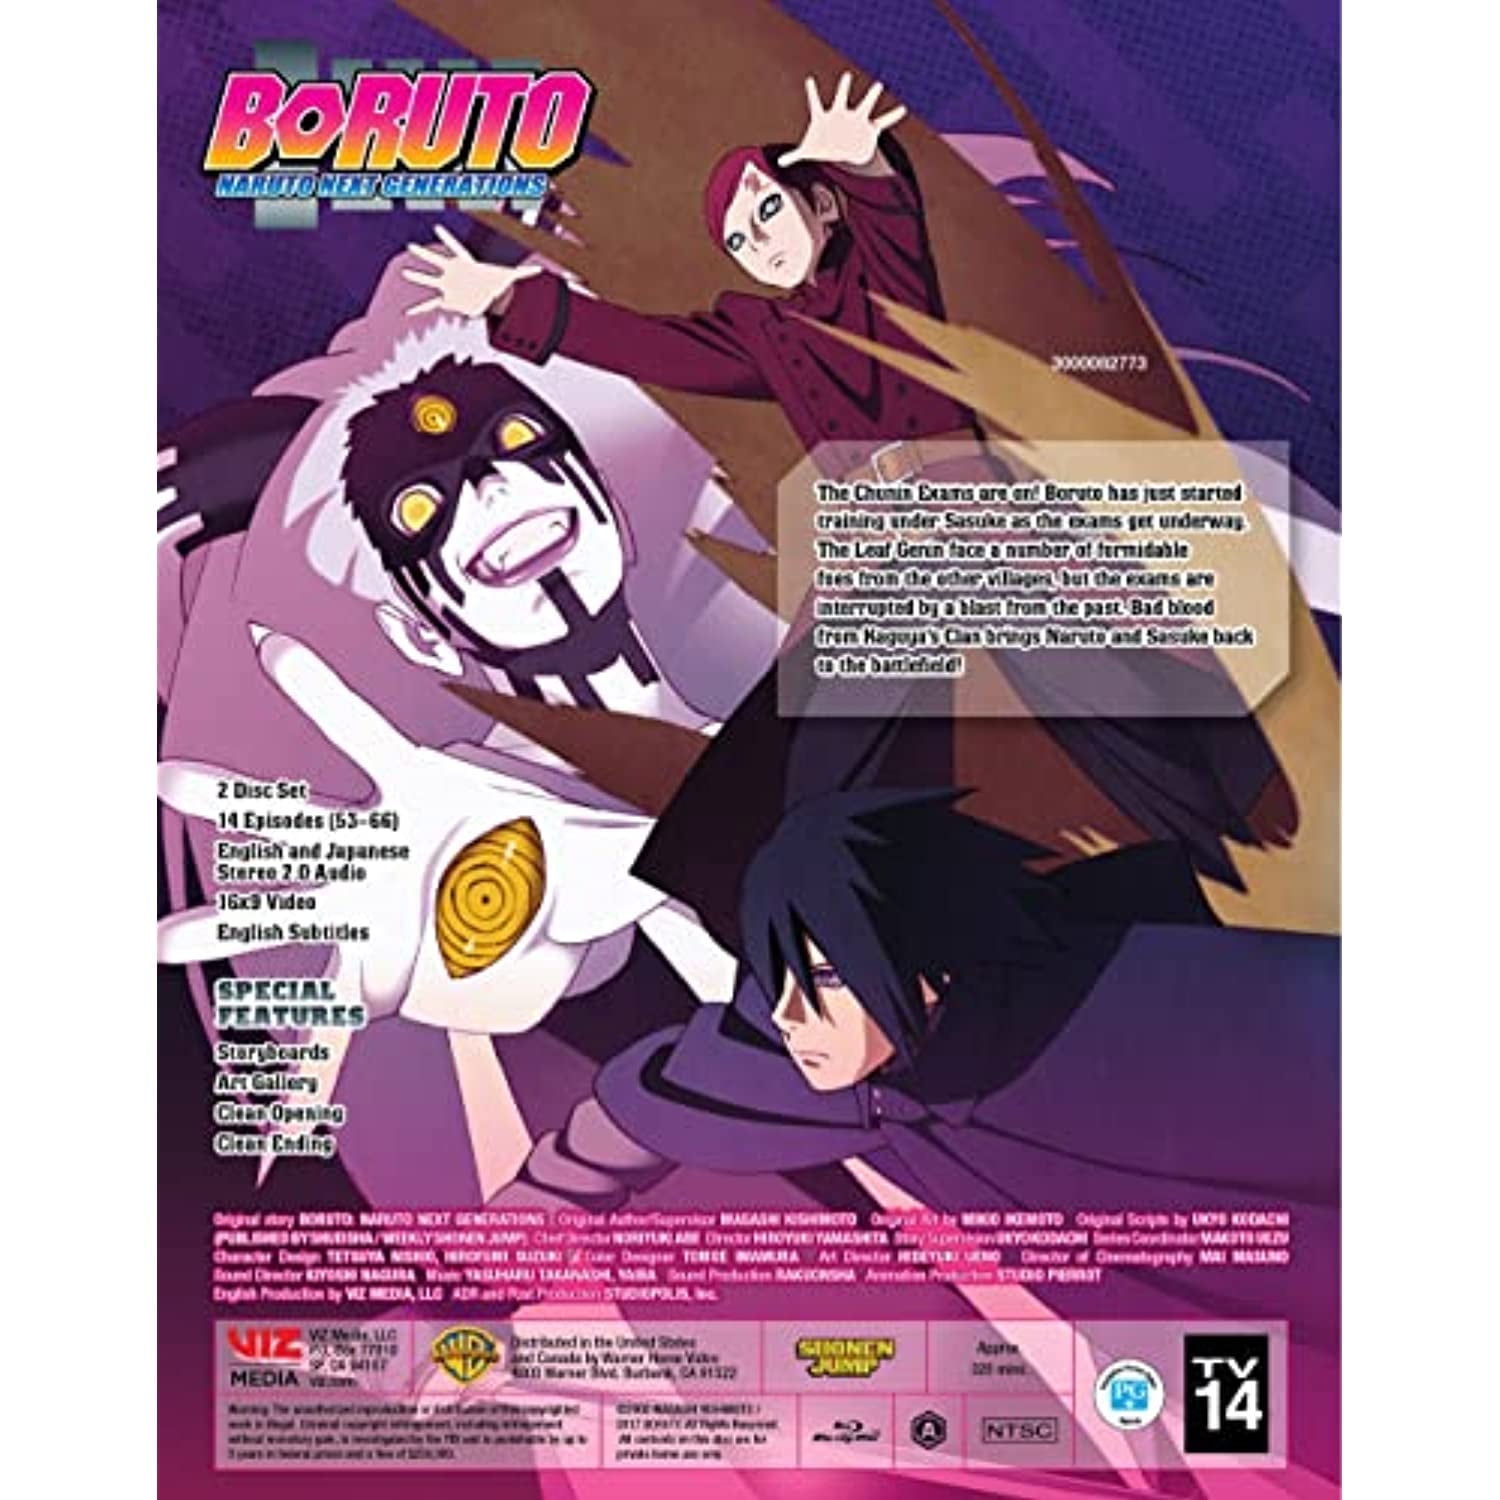 Boruto-Naruto Next Generations Vol 2 Out July 5th : r/Naruto